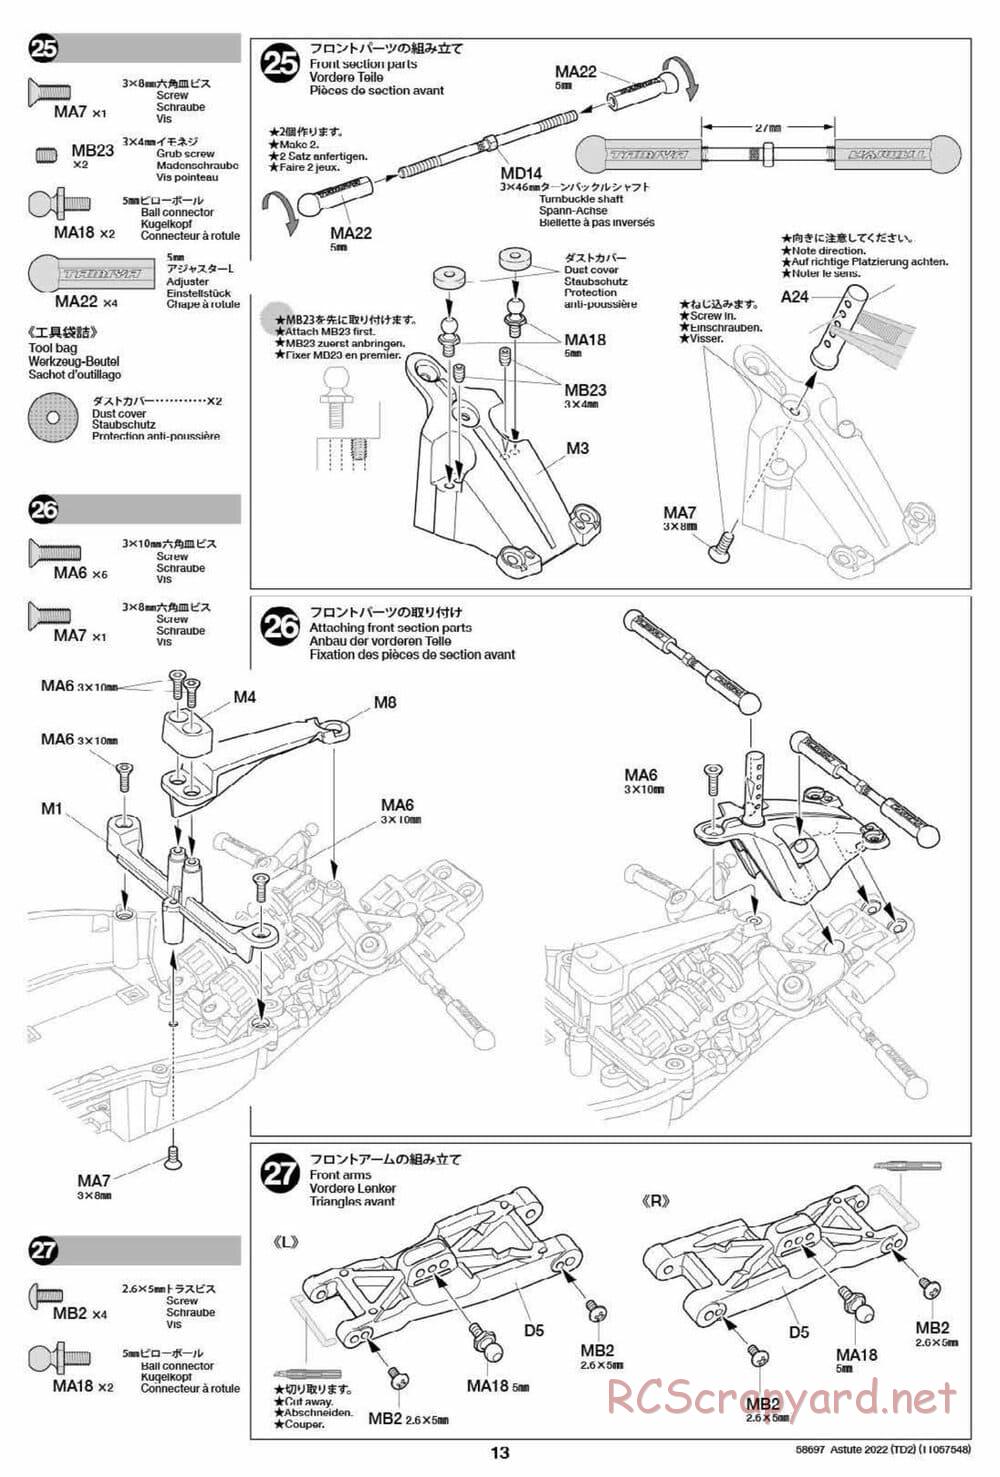 Tamiya - Astute 2022 - TD2 Chassis - Manual - Page 13